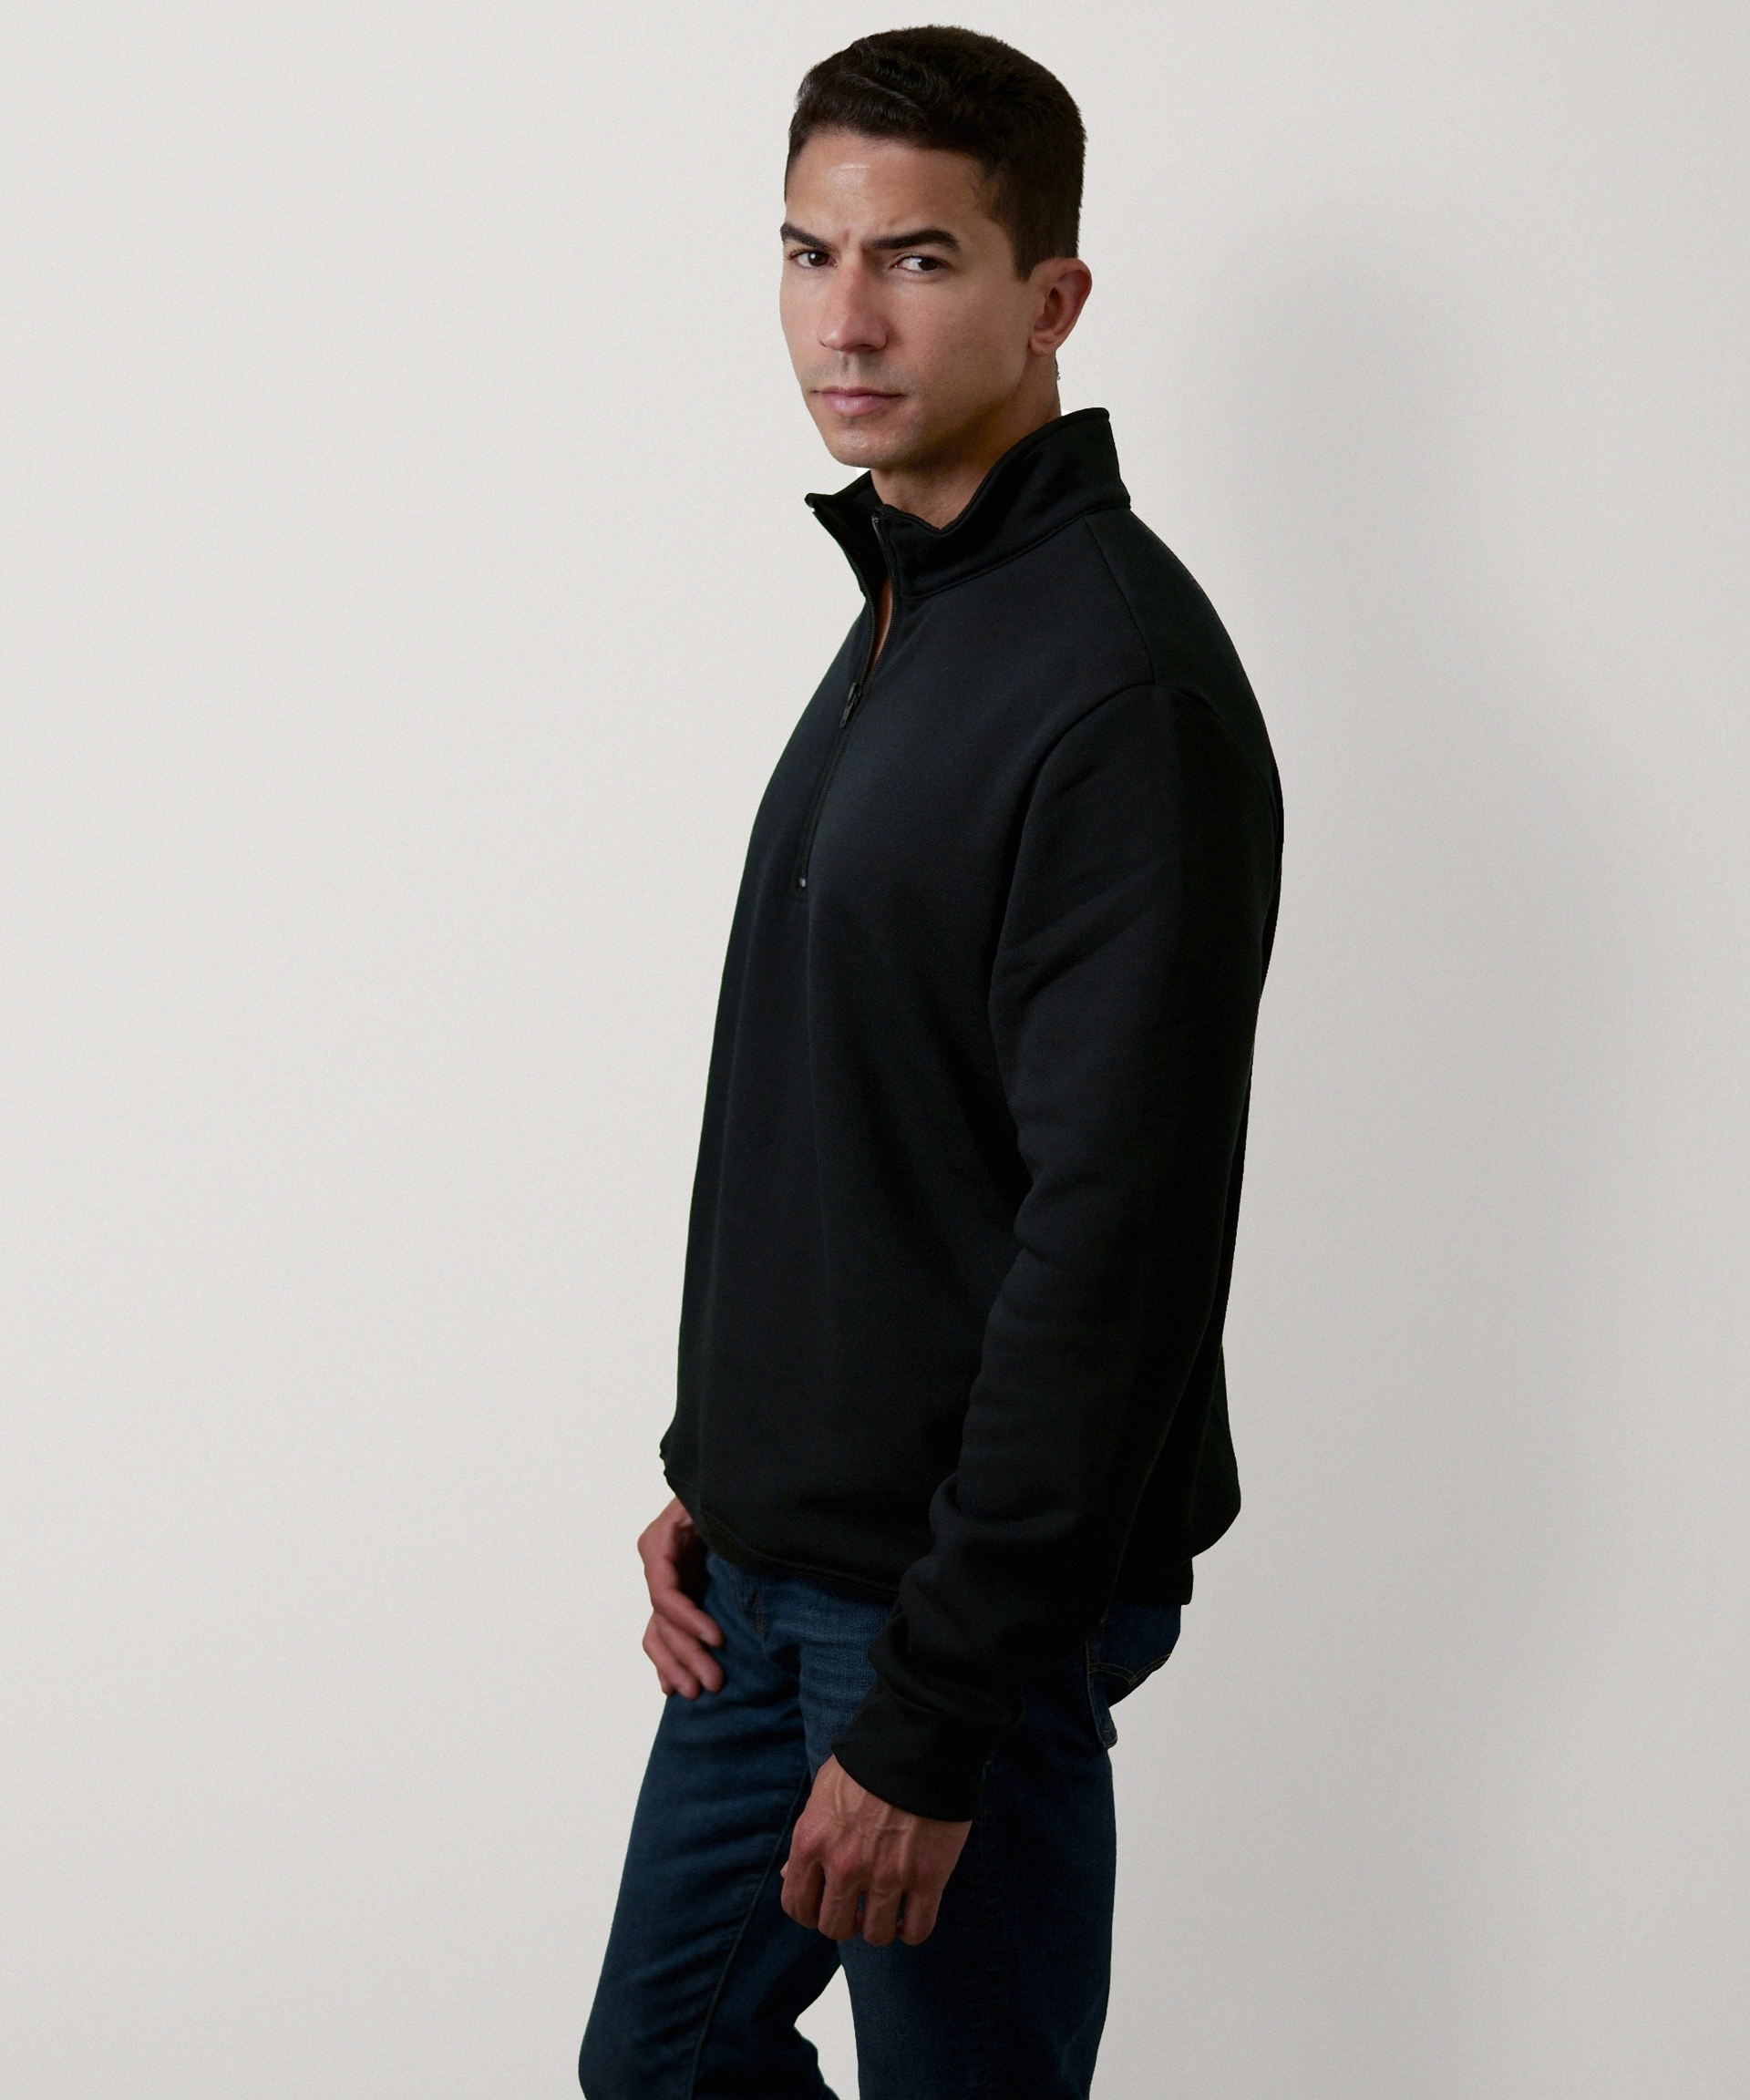 Quarter Zip Sweatshirt for Men (Black)